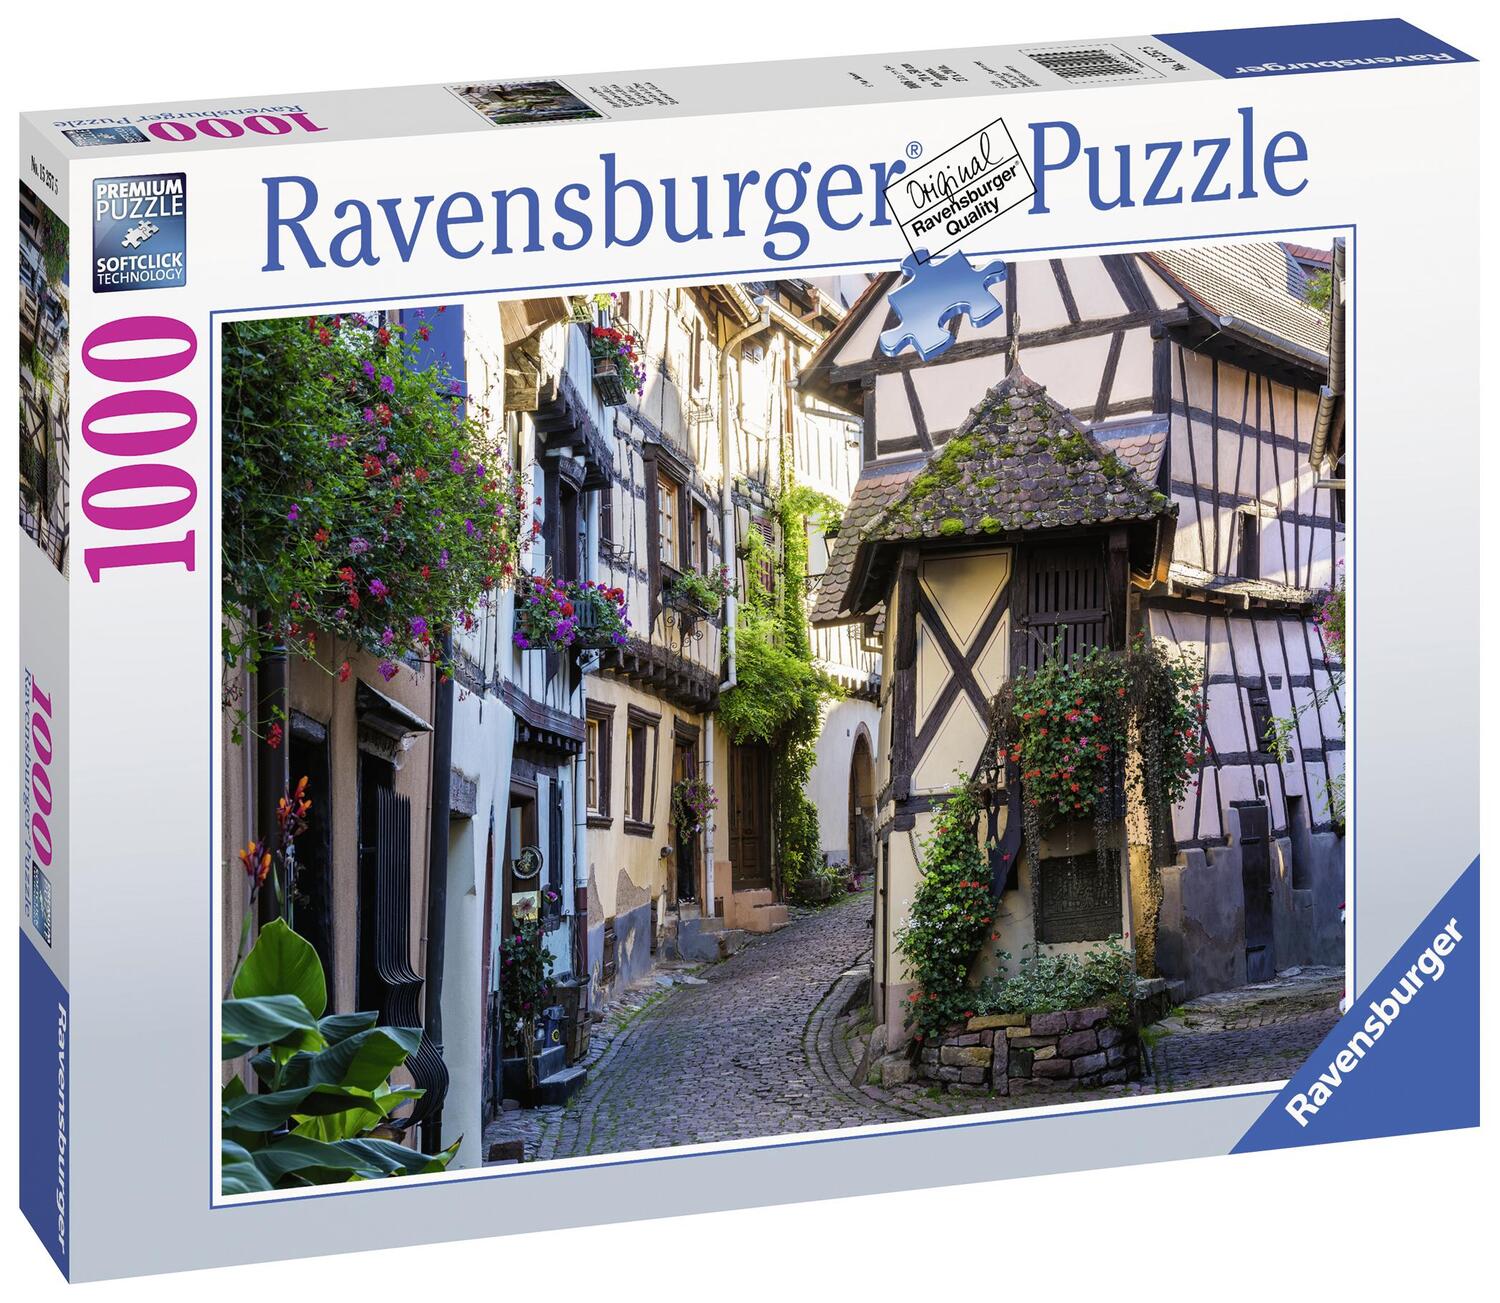 Bild: 4005556152575 | Eguisheim im Elsass Puzzle 1000 Teile | Spiel | Deutsch | 2019